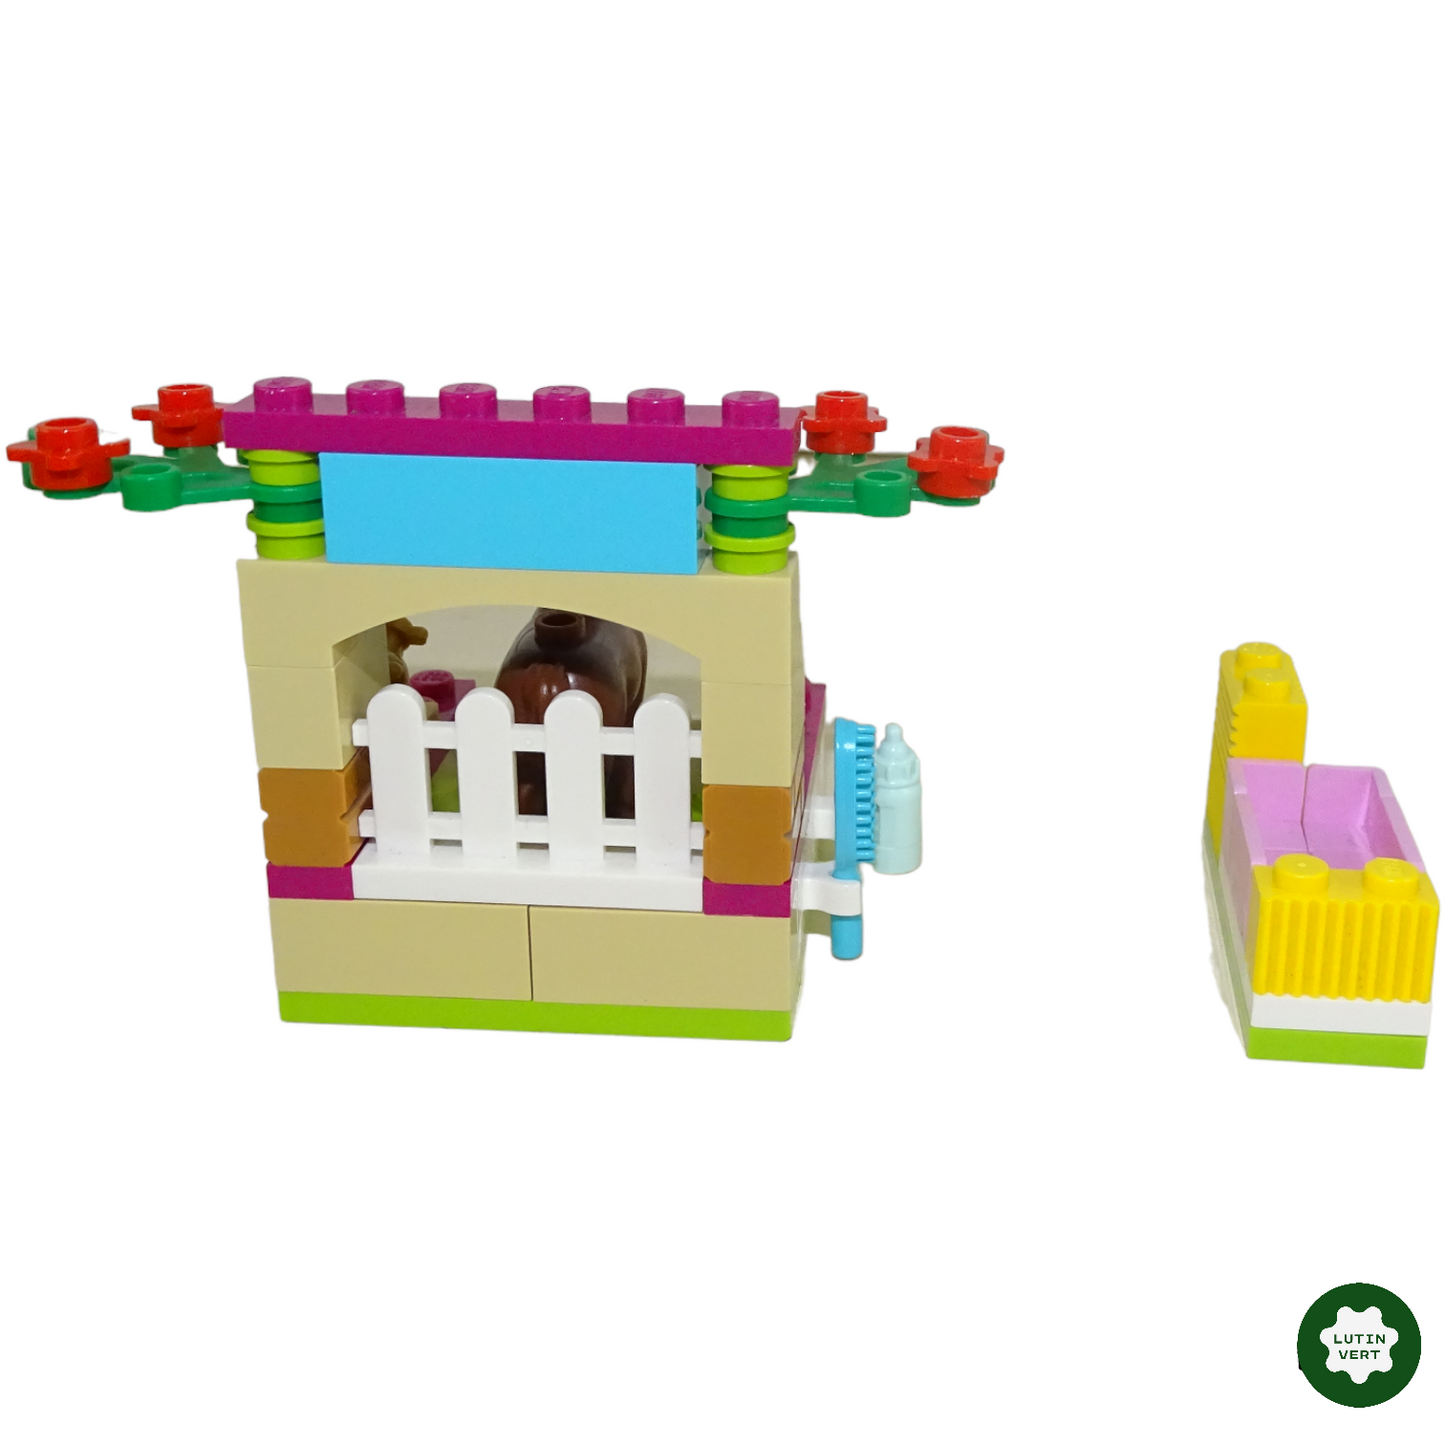 Le petit poulain 41089 d'occasion LEGO - Dès 5 ans | Lutin Vert